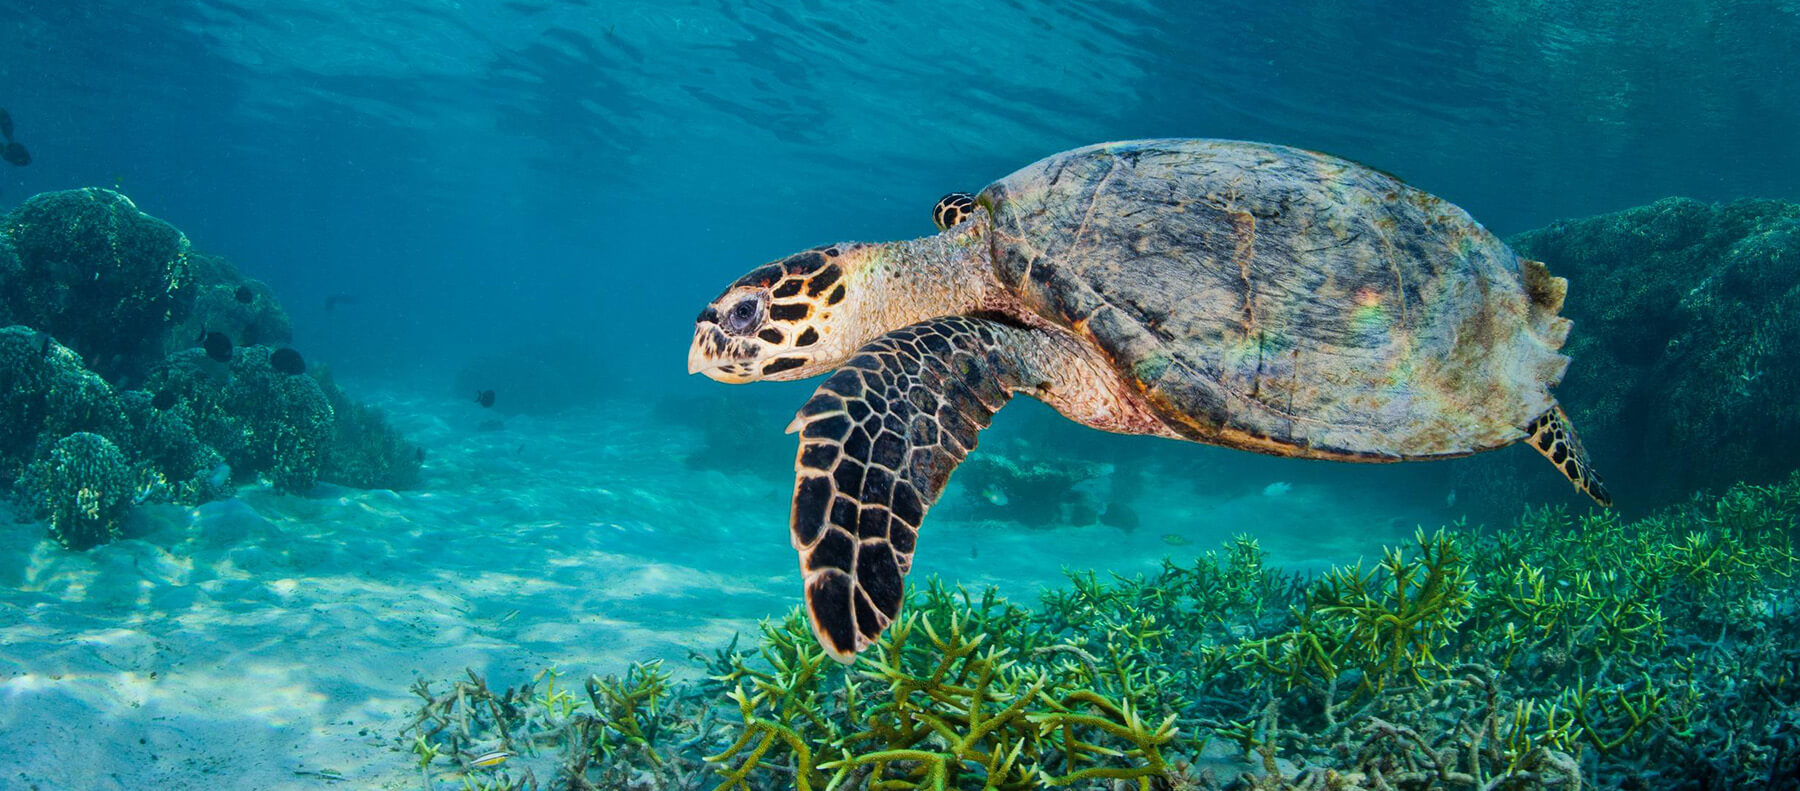 https://www.greenpeace.org/usa/wp-content/uploads/2019/08/Hawksbill-Turtle-in-Komodo-National-Park.jpg